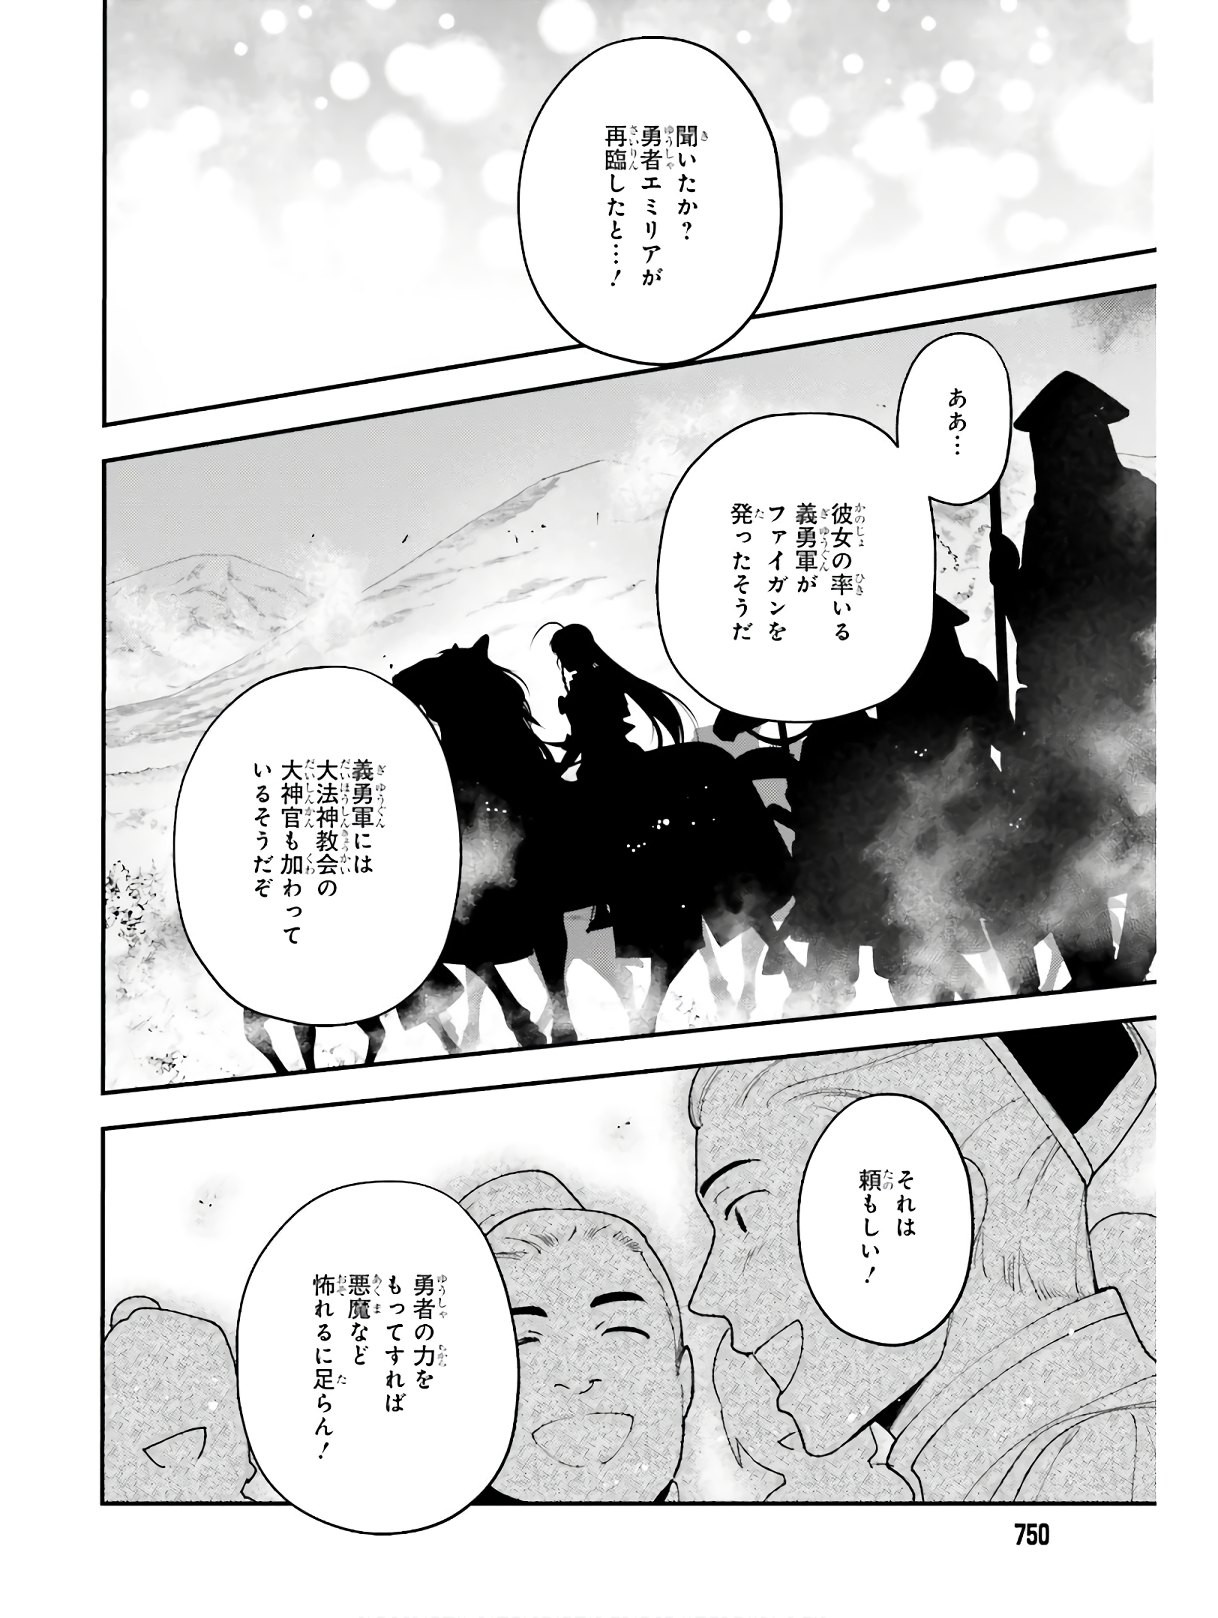 Hataraku Maousama! - Chapter 87 - Page 3